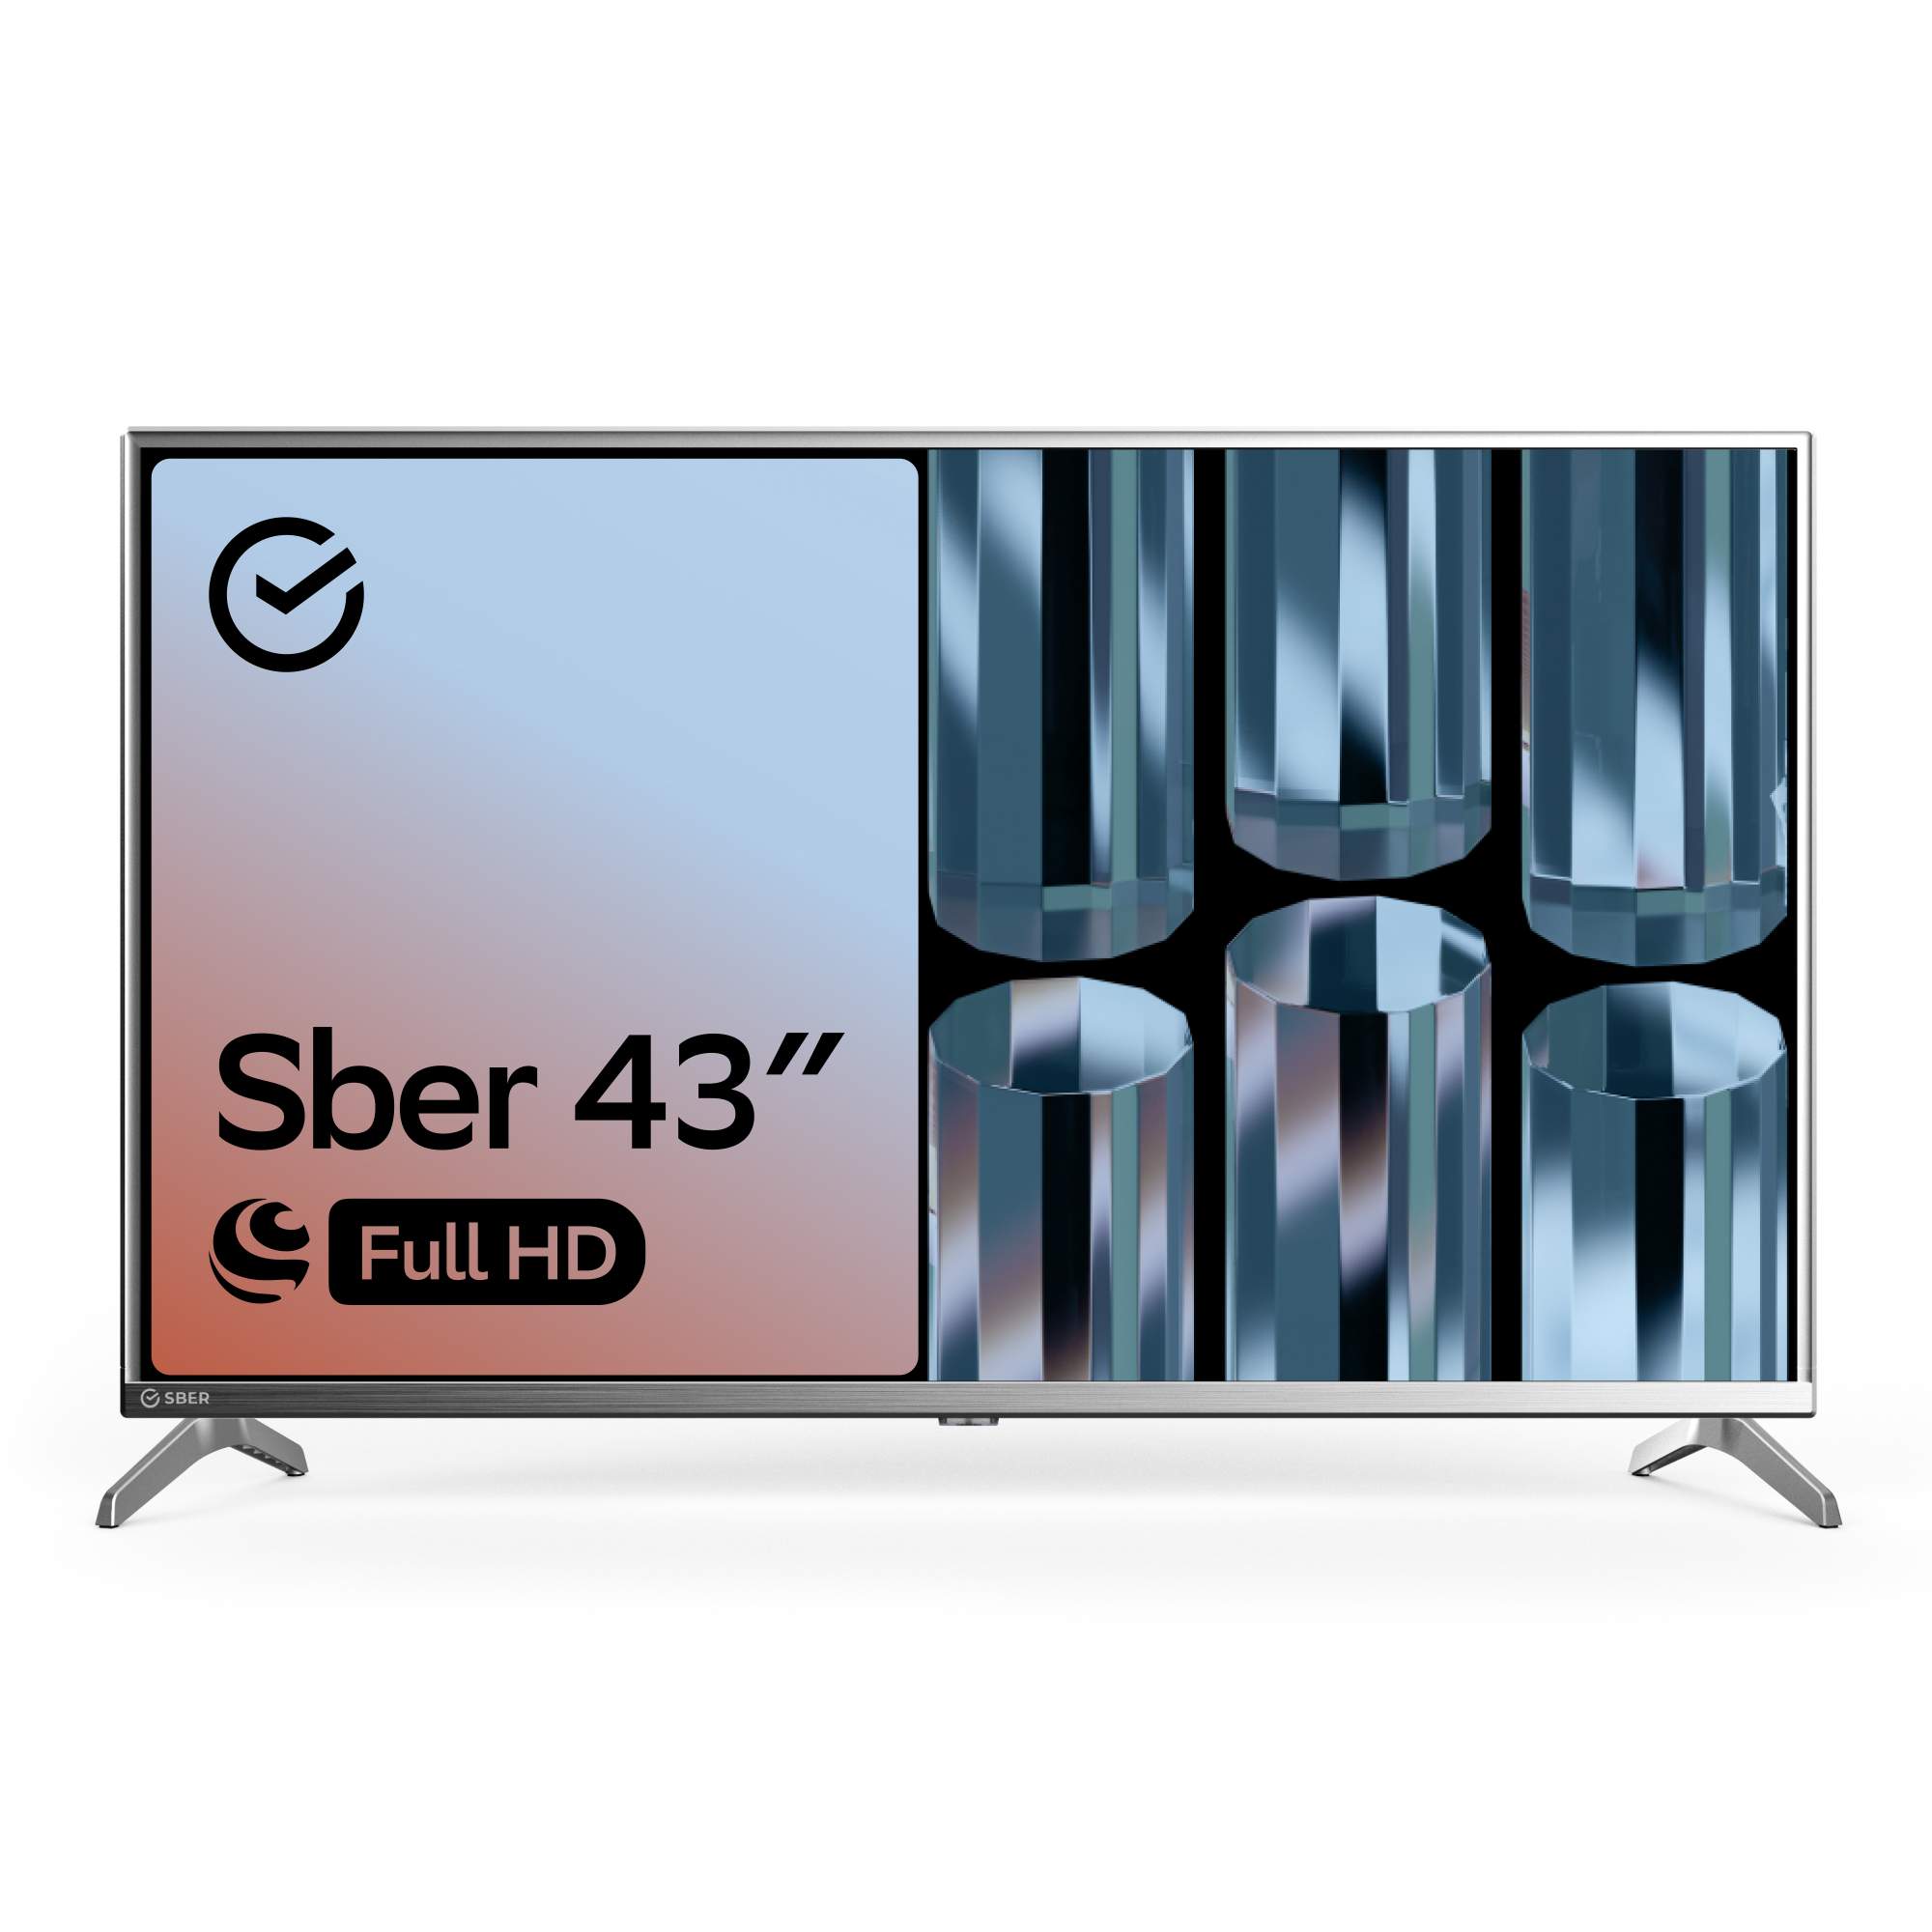 Телевизор Sber SDX-43F2012S, 43"(109 см), FHD RAM 1GB, купить в Москве, цены в интернет-магазинах на Мегамаркет